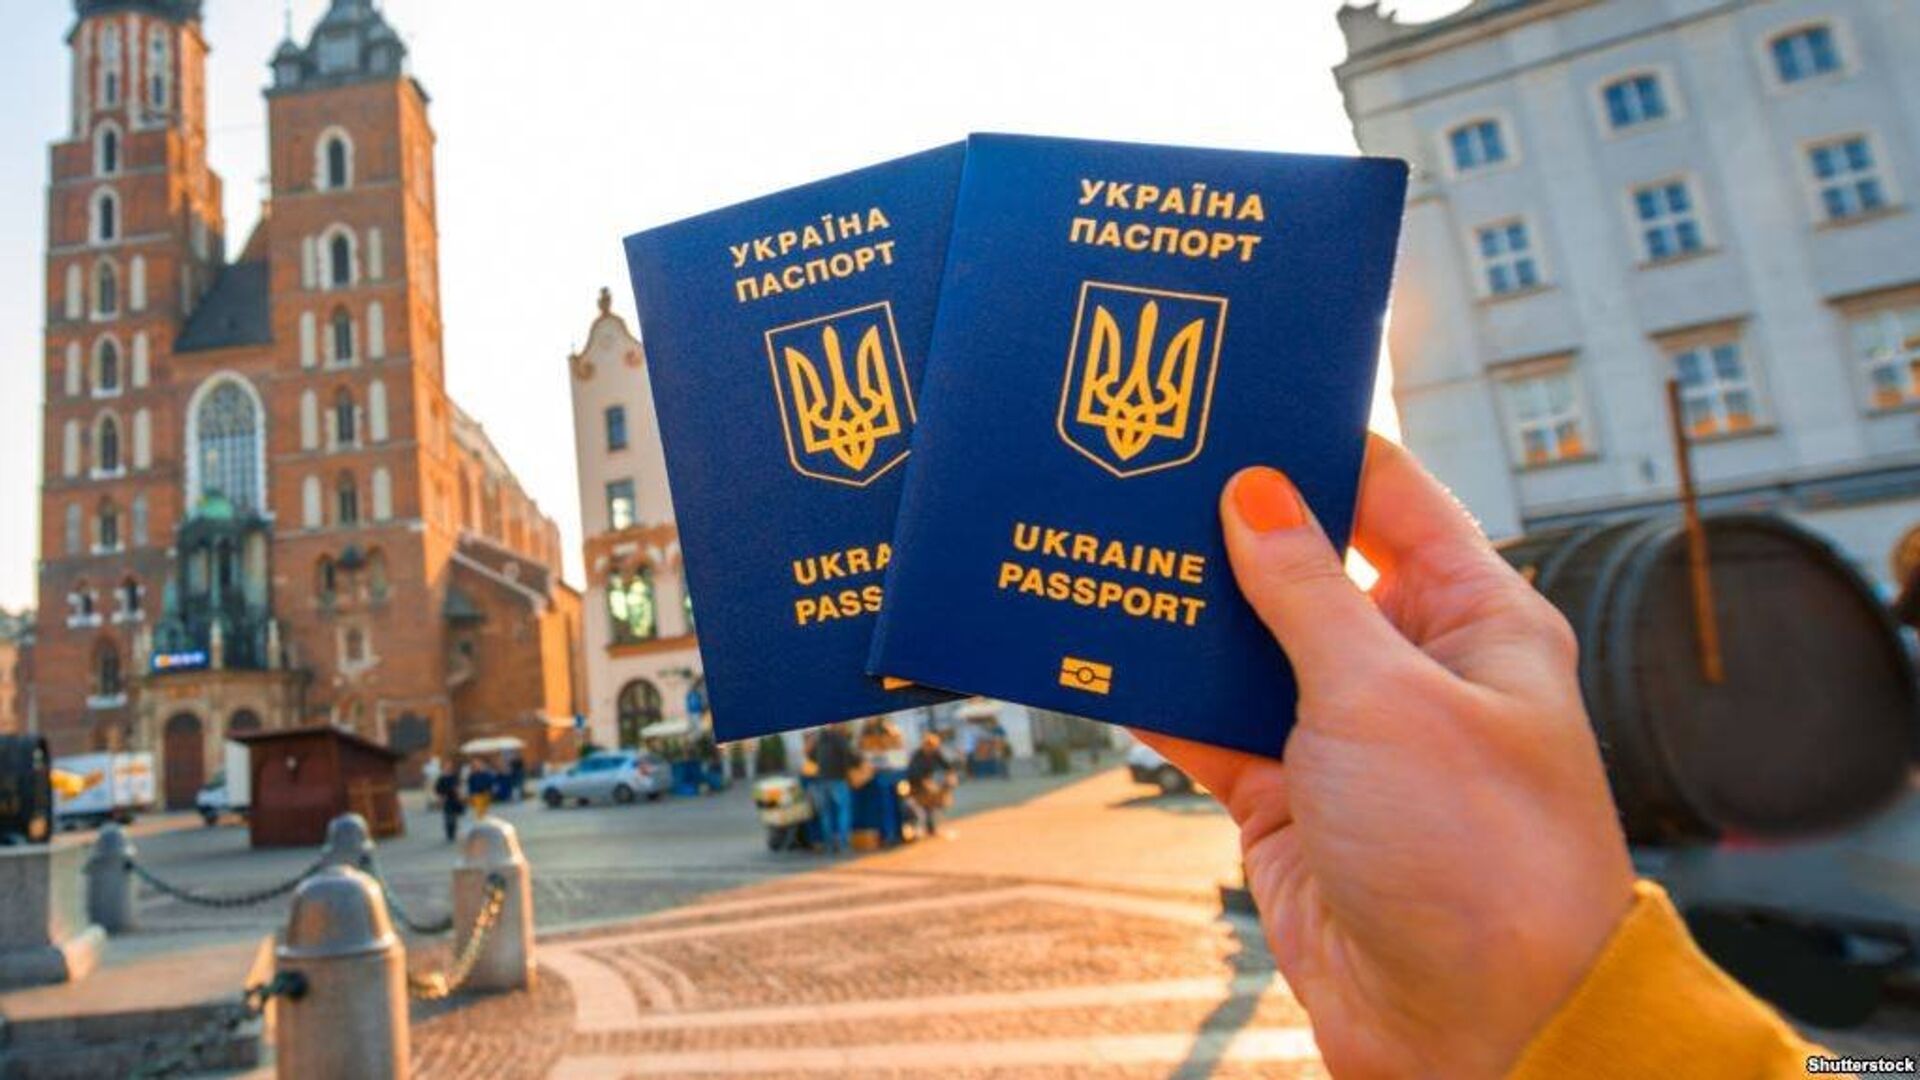 украина паспорт украинский загранпаспорт - РИА Новости, 1920, 18.07.2019